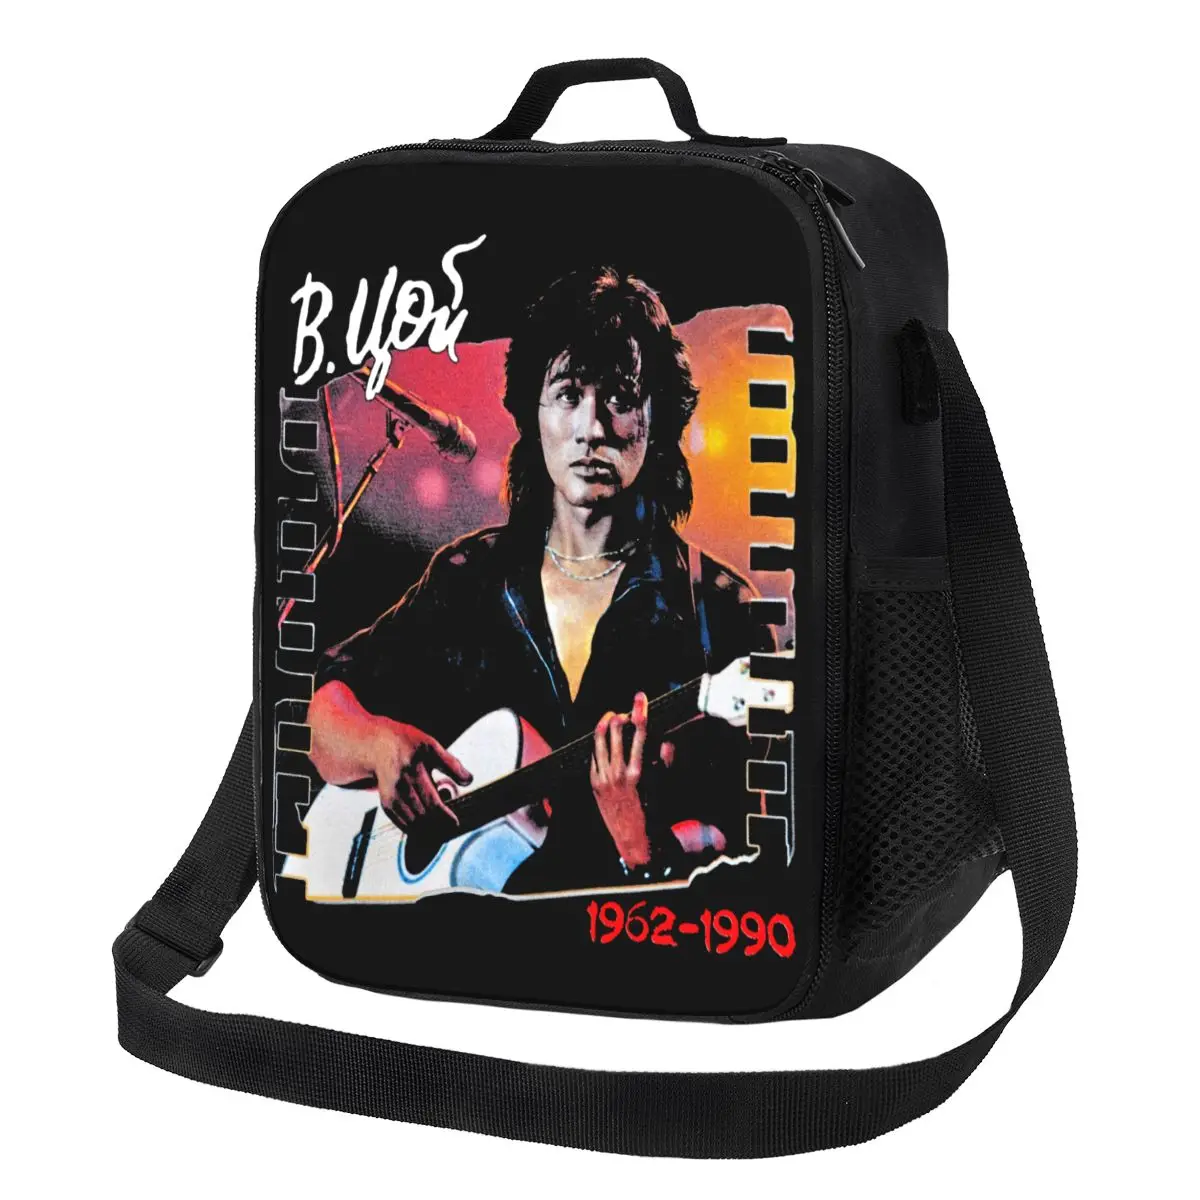 Виктор Цой Жив, изолированная сумка для ланча для путешествий, легенда русской рок-группы, термоохладитель Kino, ланч-бокс для женщин и детей